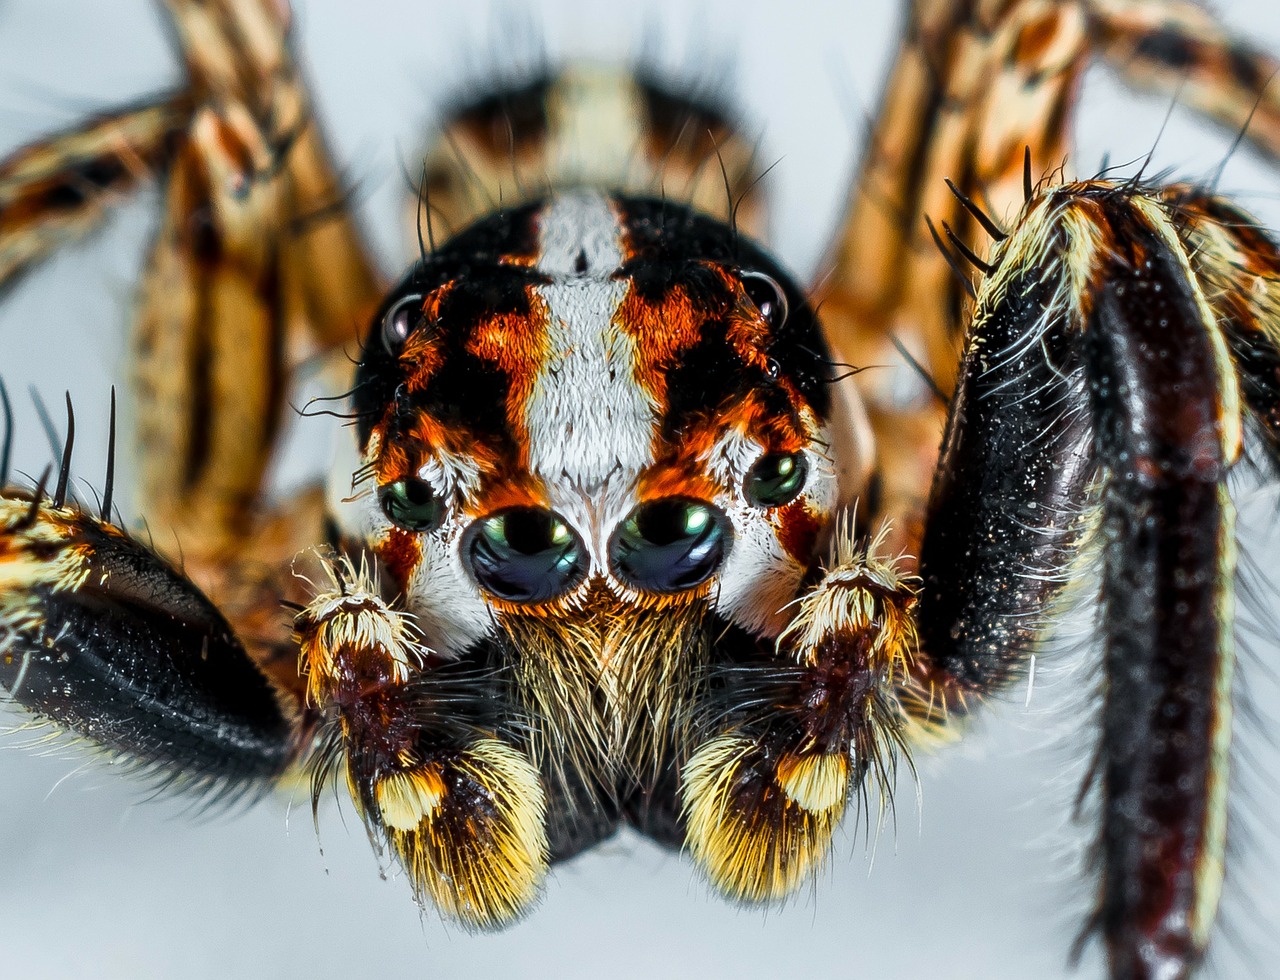 Så att du som lider av spindelfobi kan se att spindlar egentligen är rätt söta.